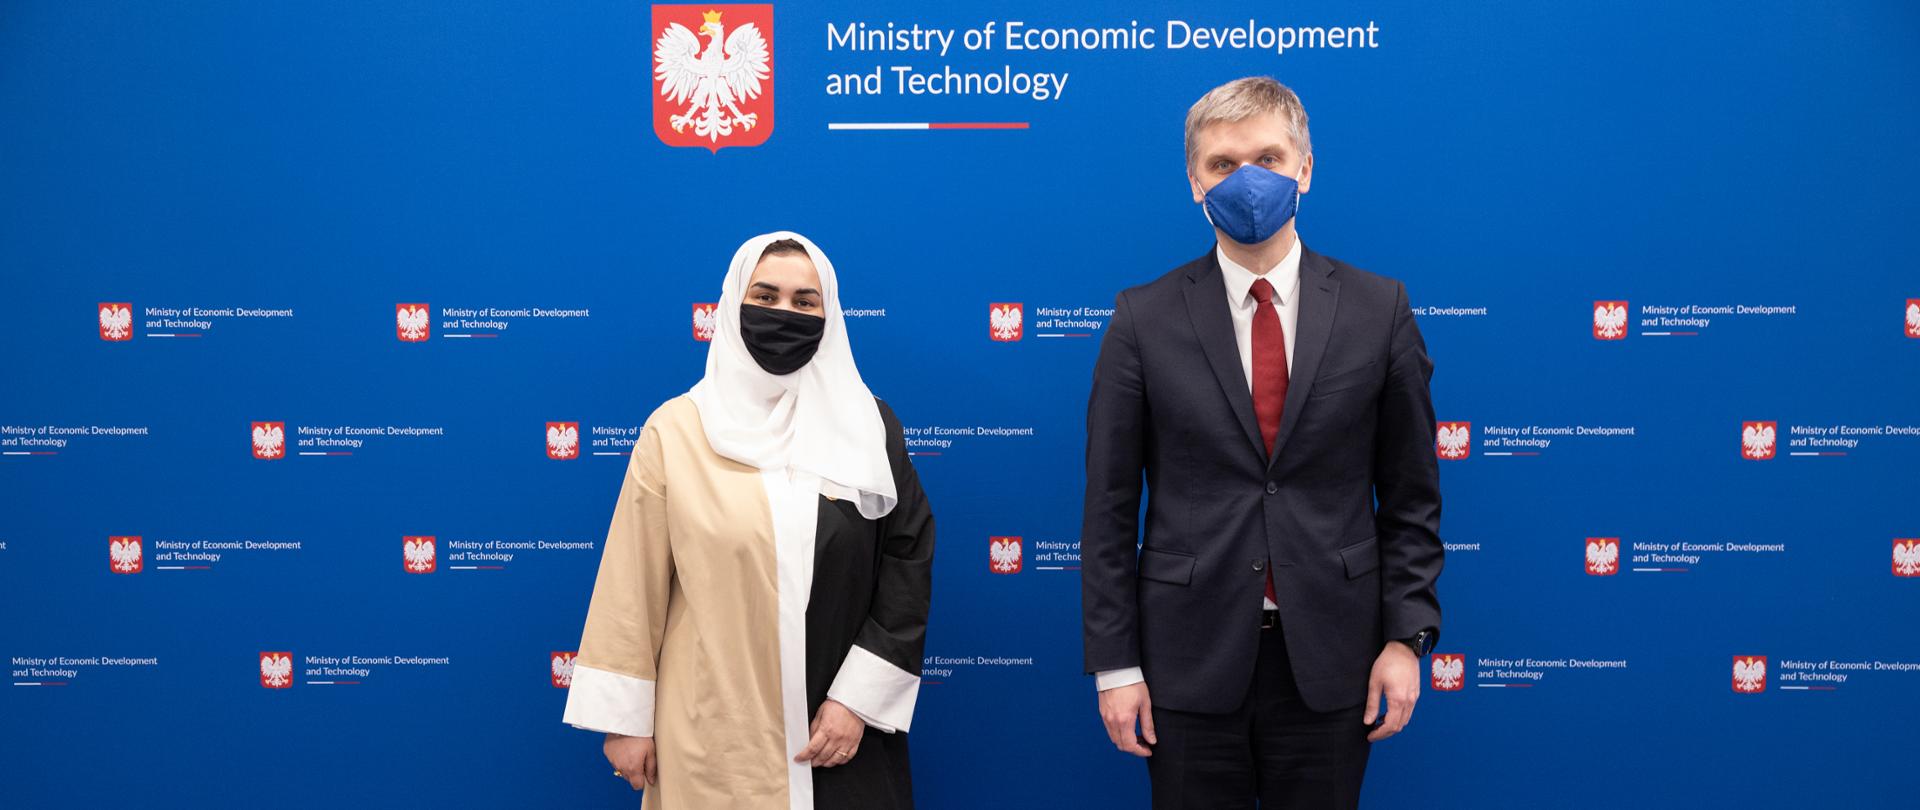 Ambasador Eman Ahmed Al-Salami i Piotr Nowak pozują na ściance z logo MRiT